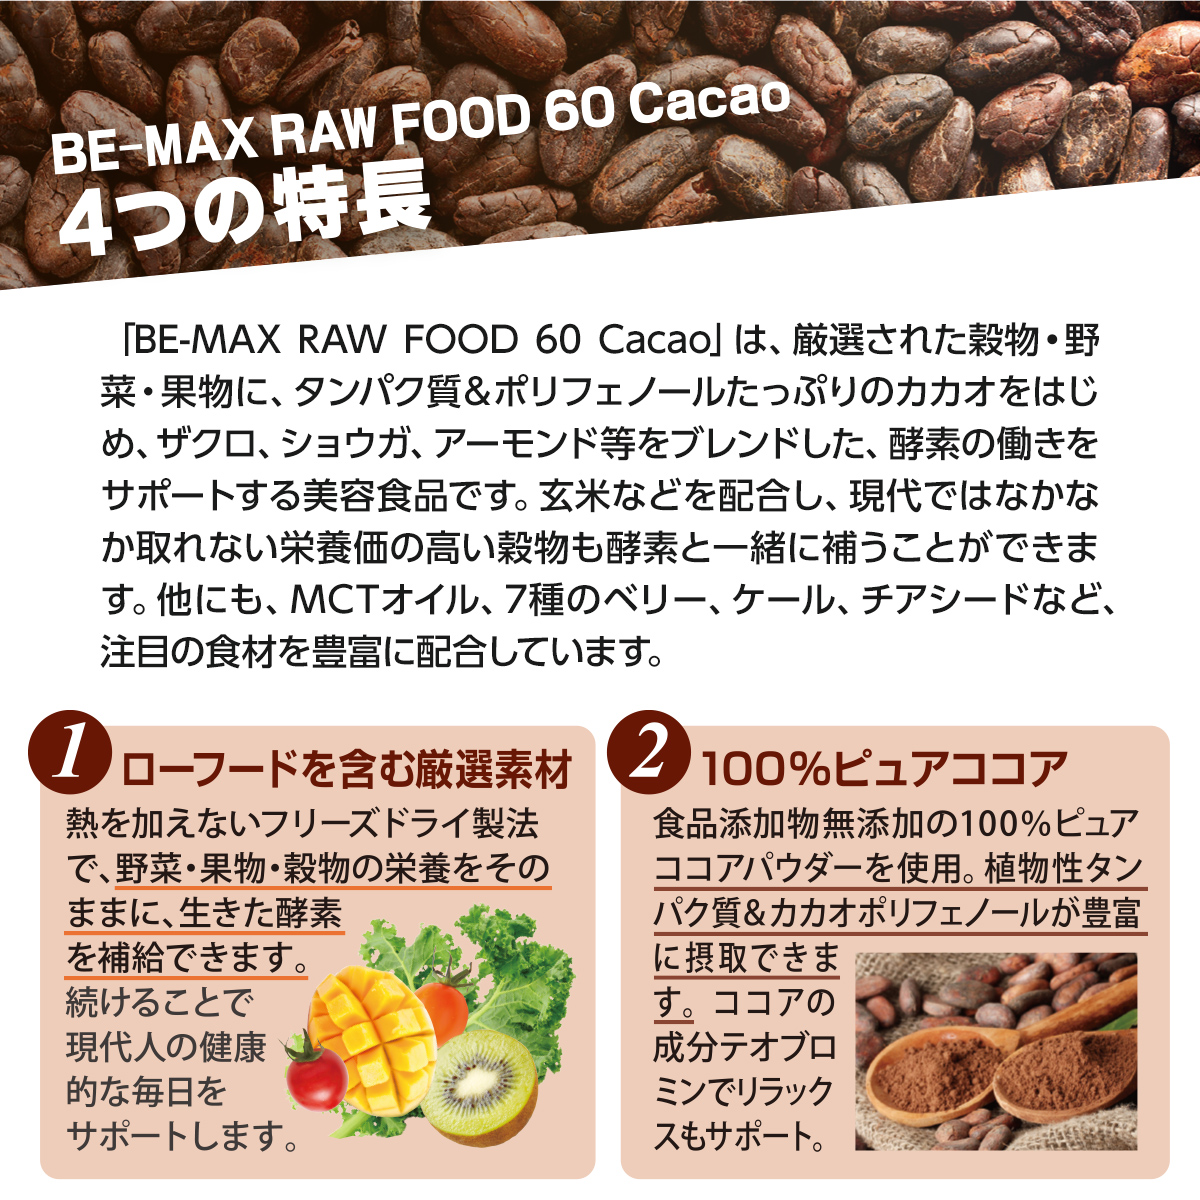 発売記念】BE-MAX RAW FOOD 55 Cacao １箱ご購入で３包プレゼント